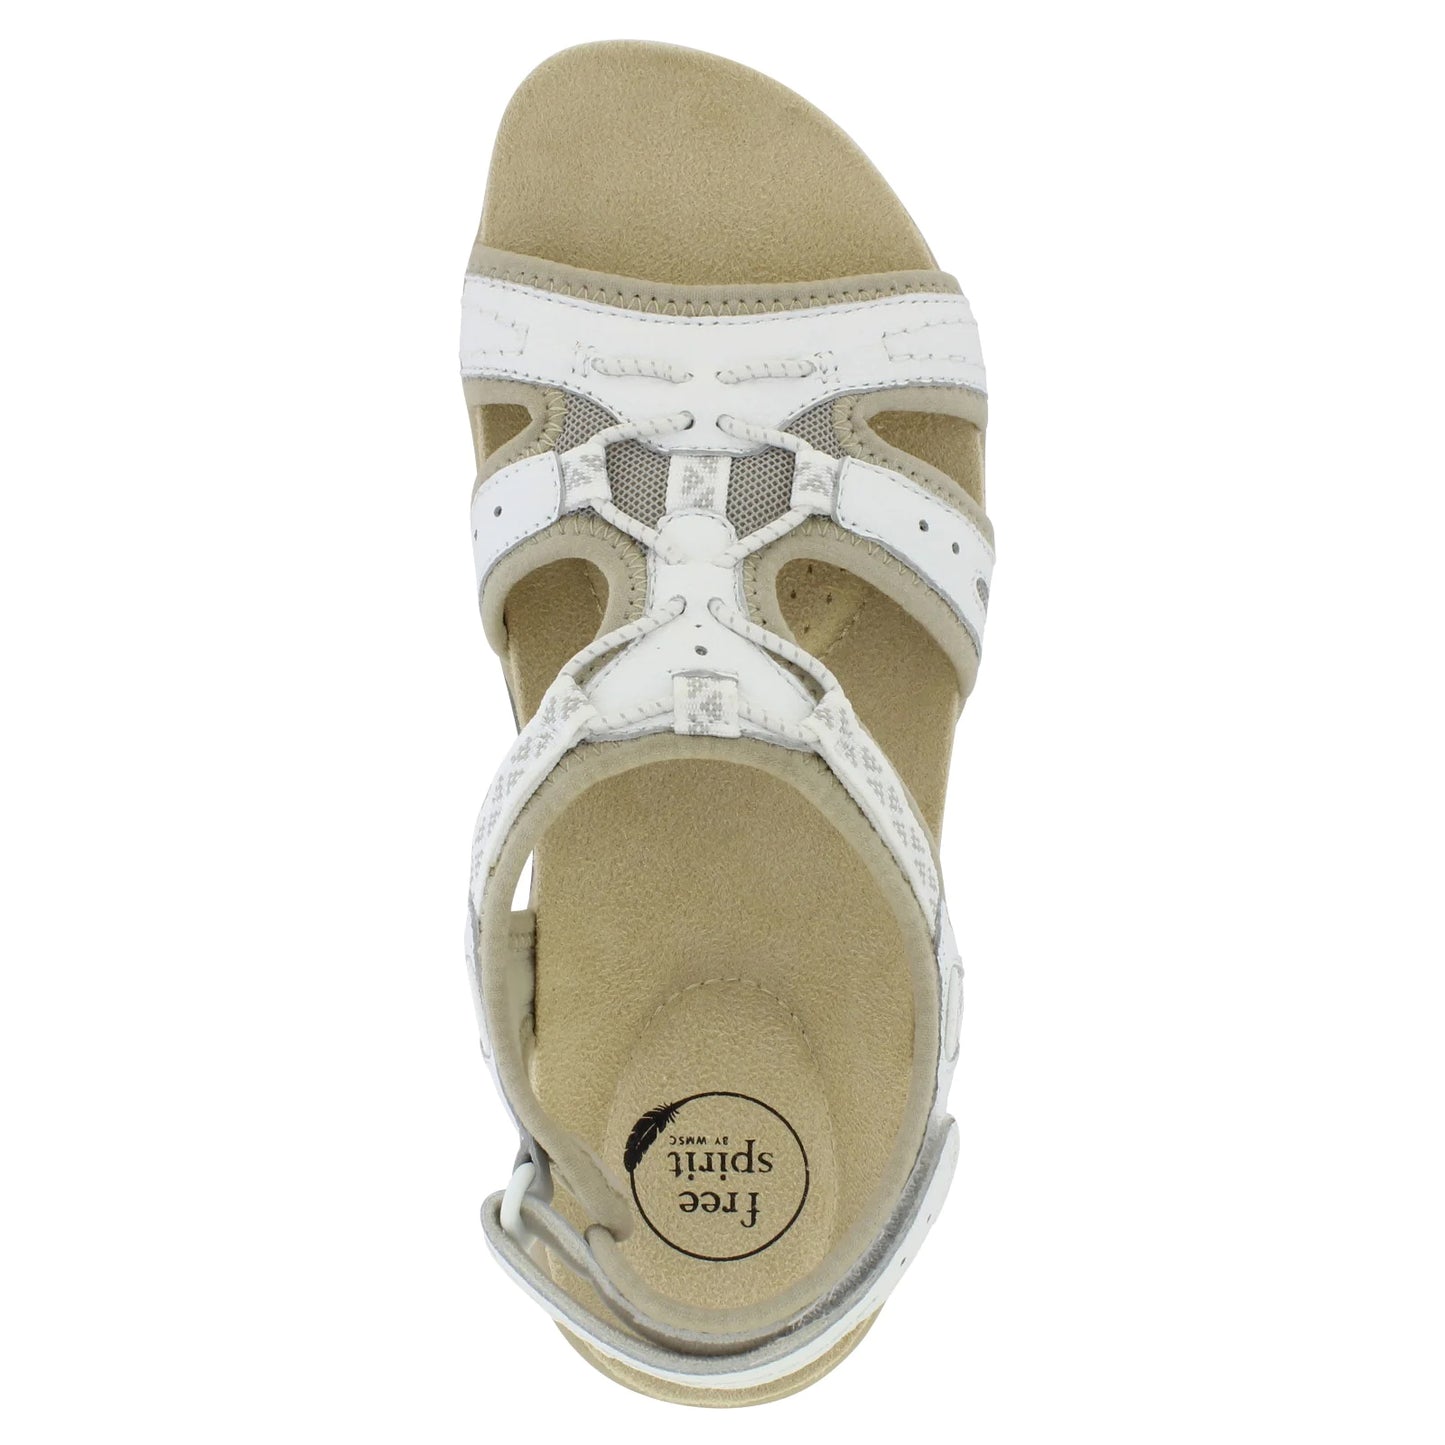 Free Spirit Fairmont White Lightweight Sandals